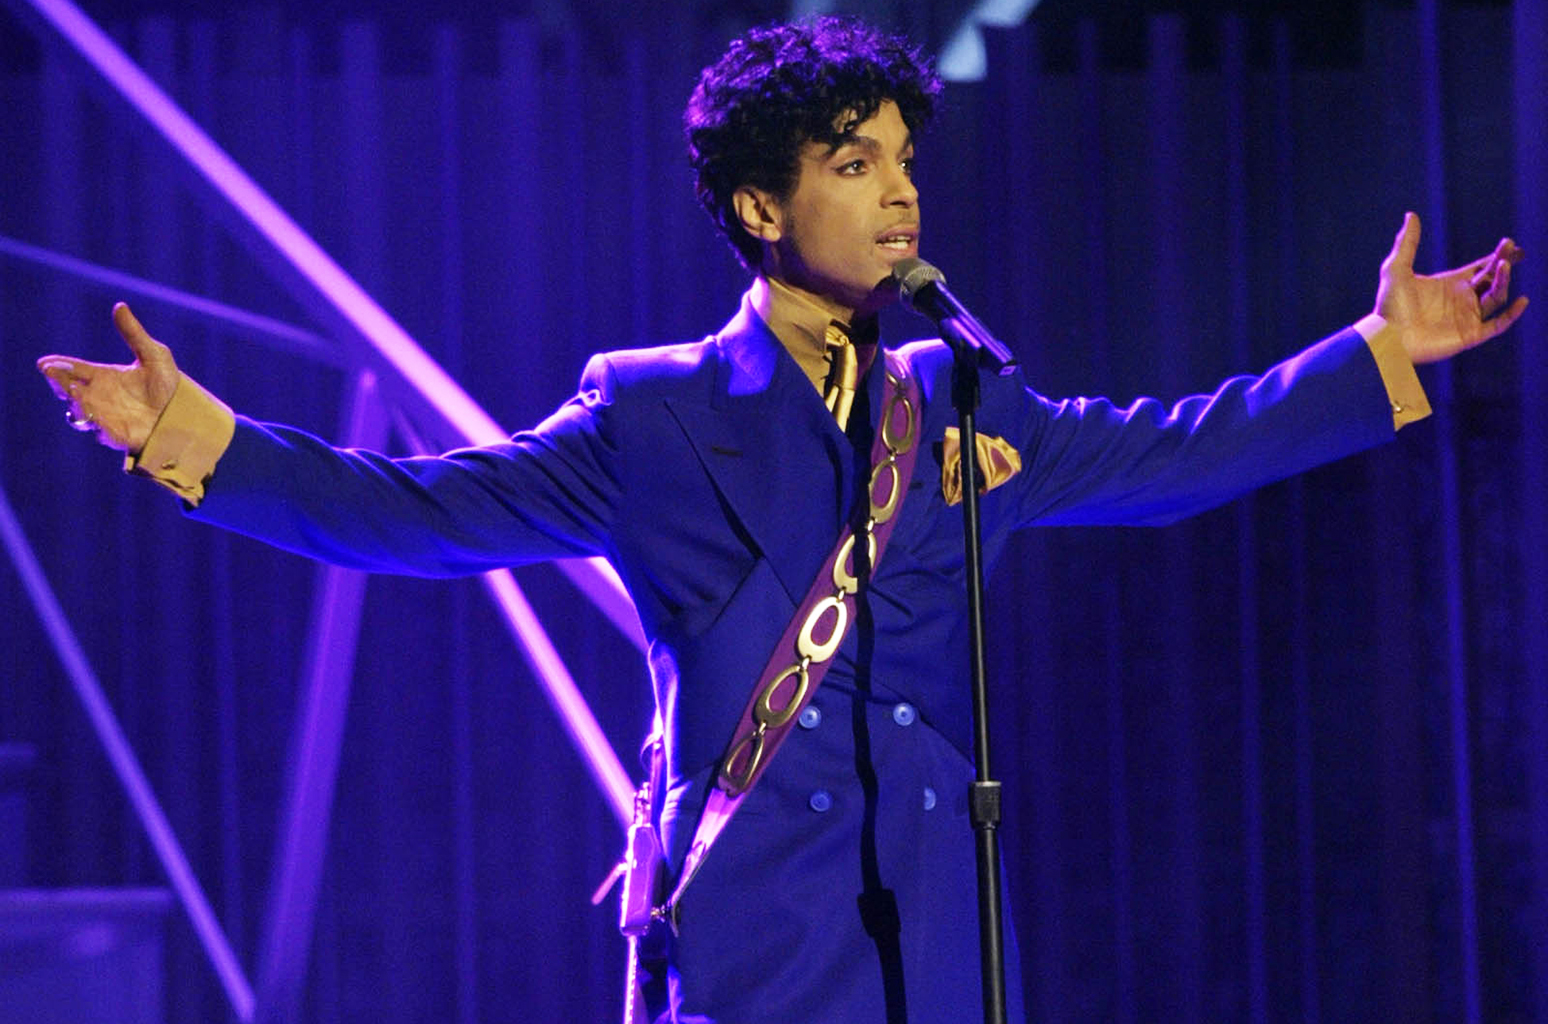 Αυτός είναι ο καλύτερος φόρος τιμής στον Prince! [pic]